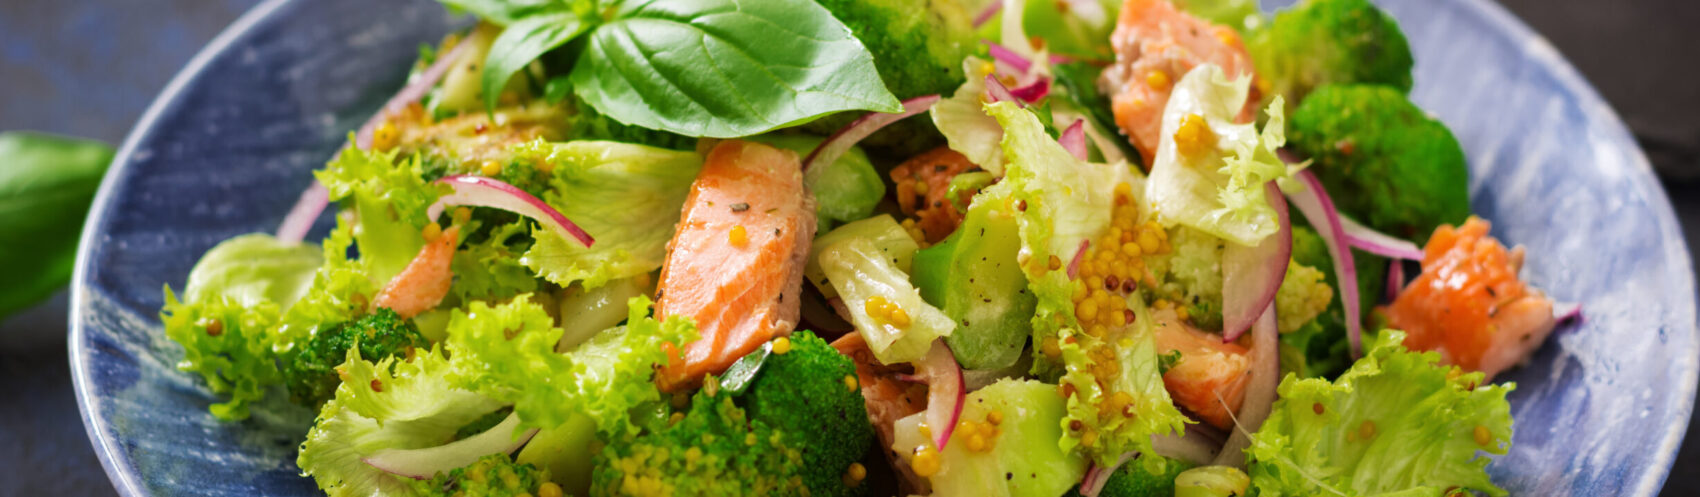 Salade de brocolis et de pommes de terre au saumon fumé